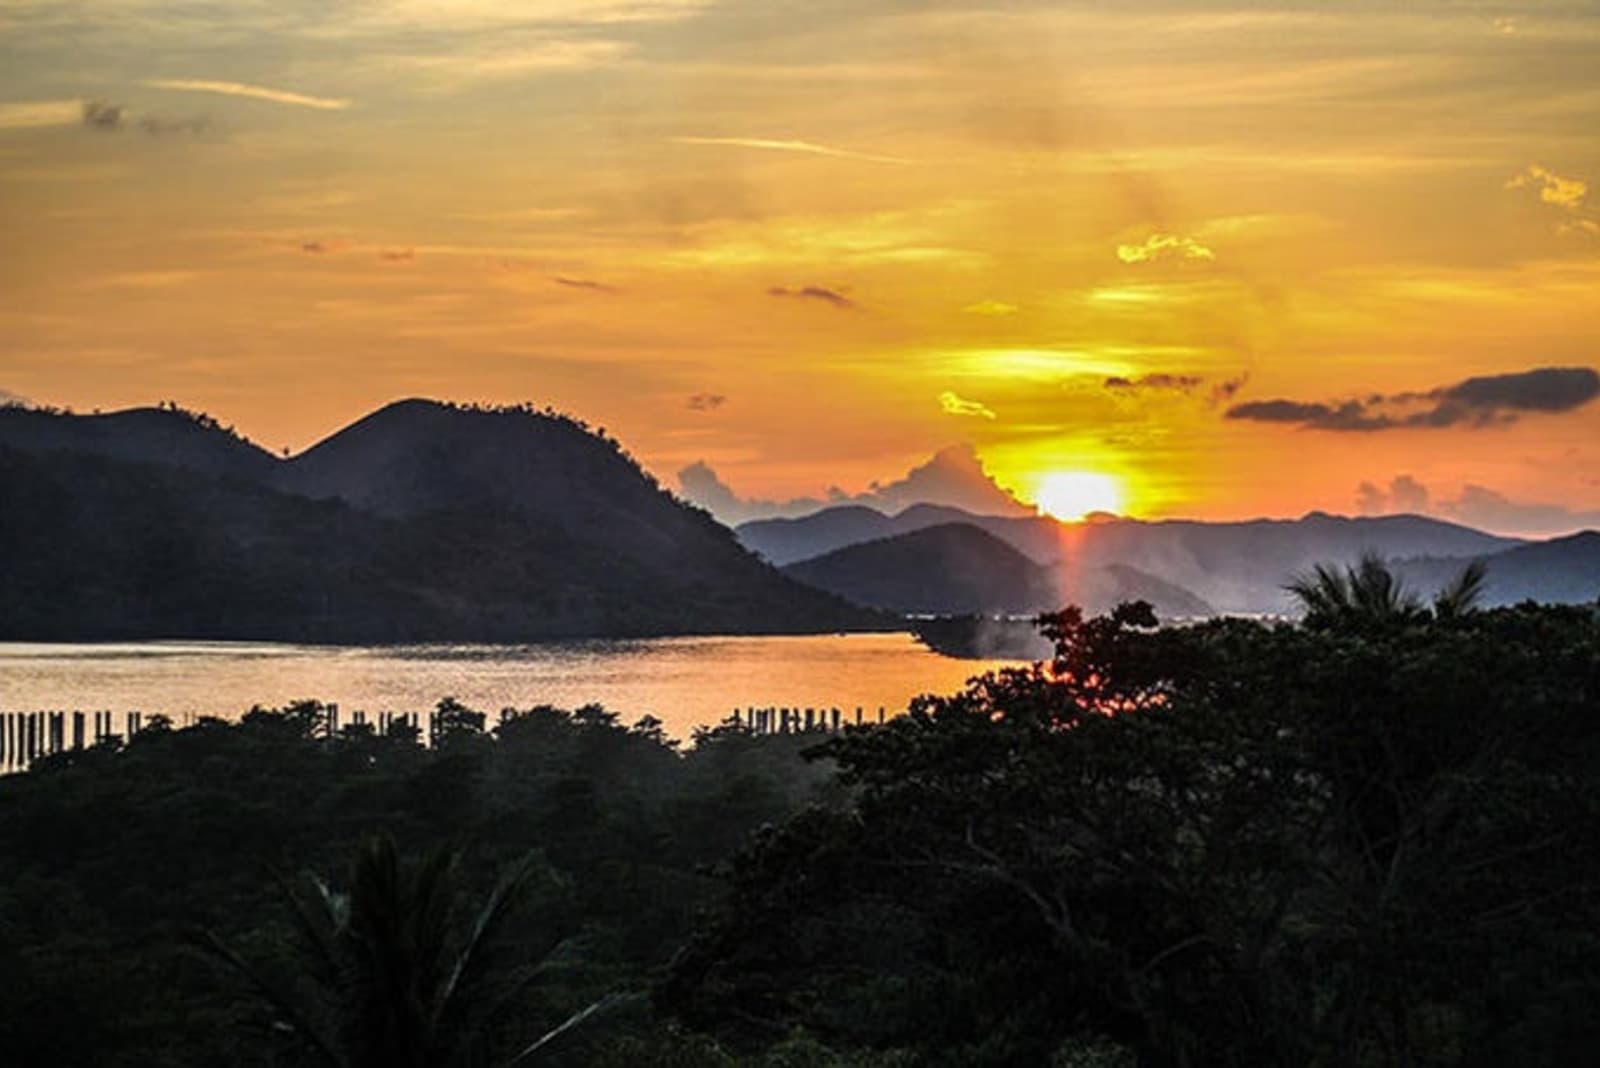 coron-sunset-philippines-richard-collett.jpeg